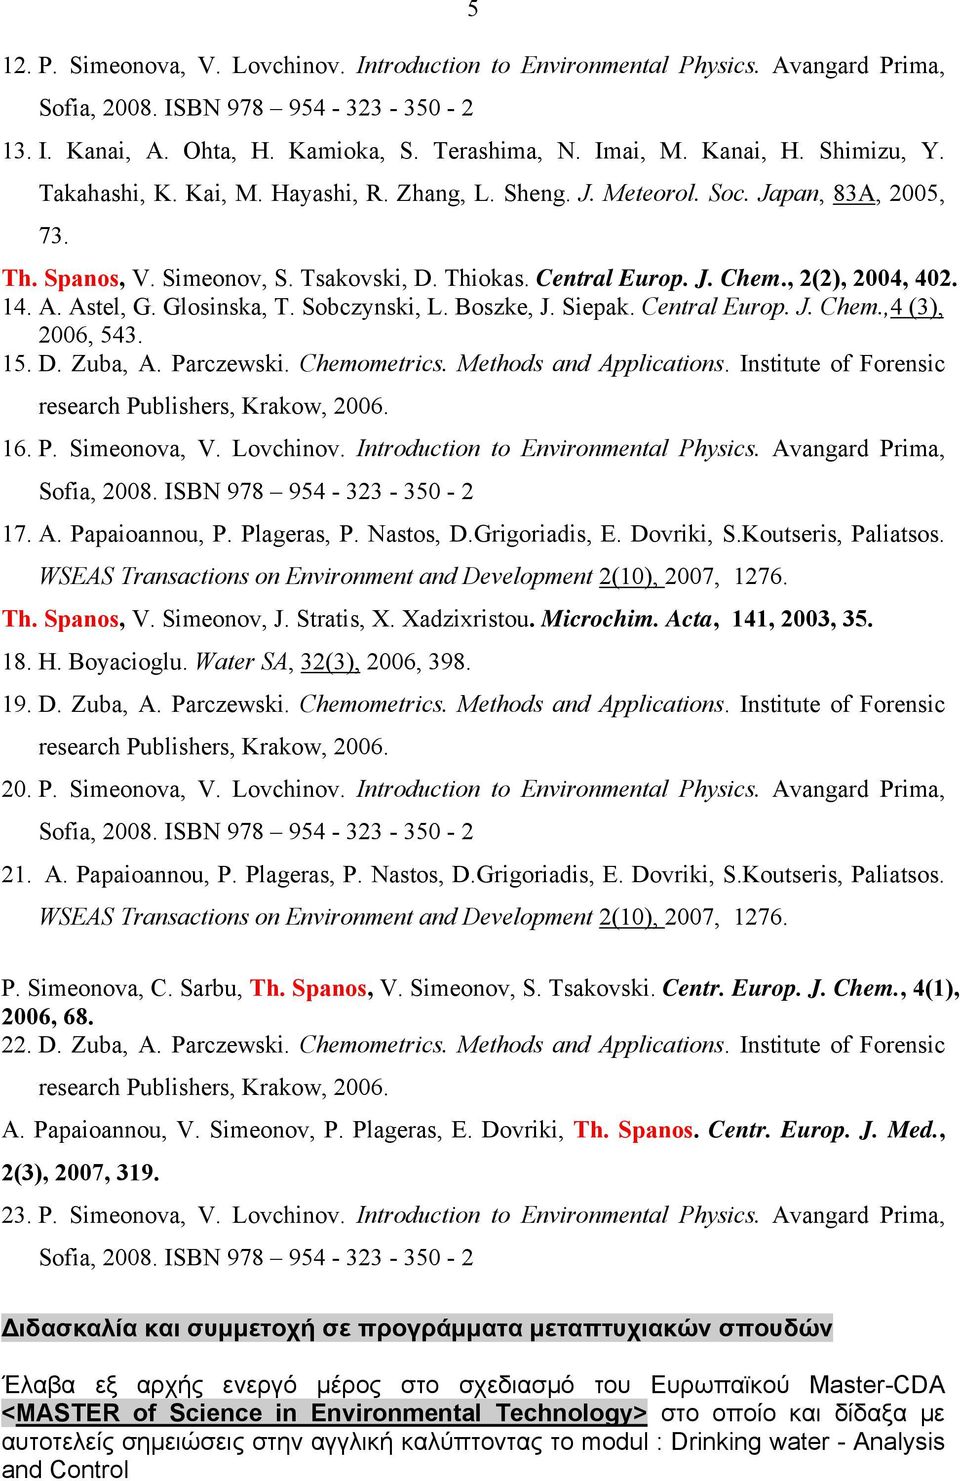 Sobczynski, L. Boszke, J. Siepak. Central Europ. J. Chem.,4 (3), 2006, 543. 15. D. Zuba, A. Parczewski. Chemometrics. Methods and Applications. Institute of Forensic research Publishers, Krakow, 2006.